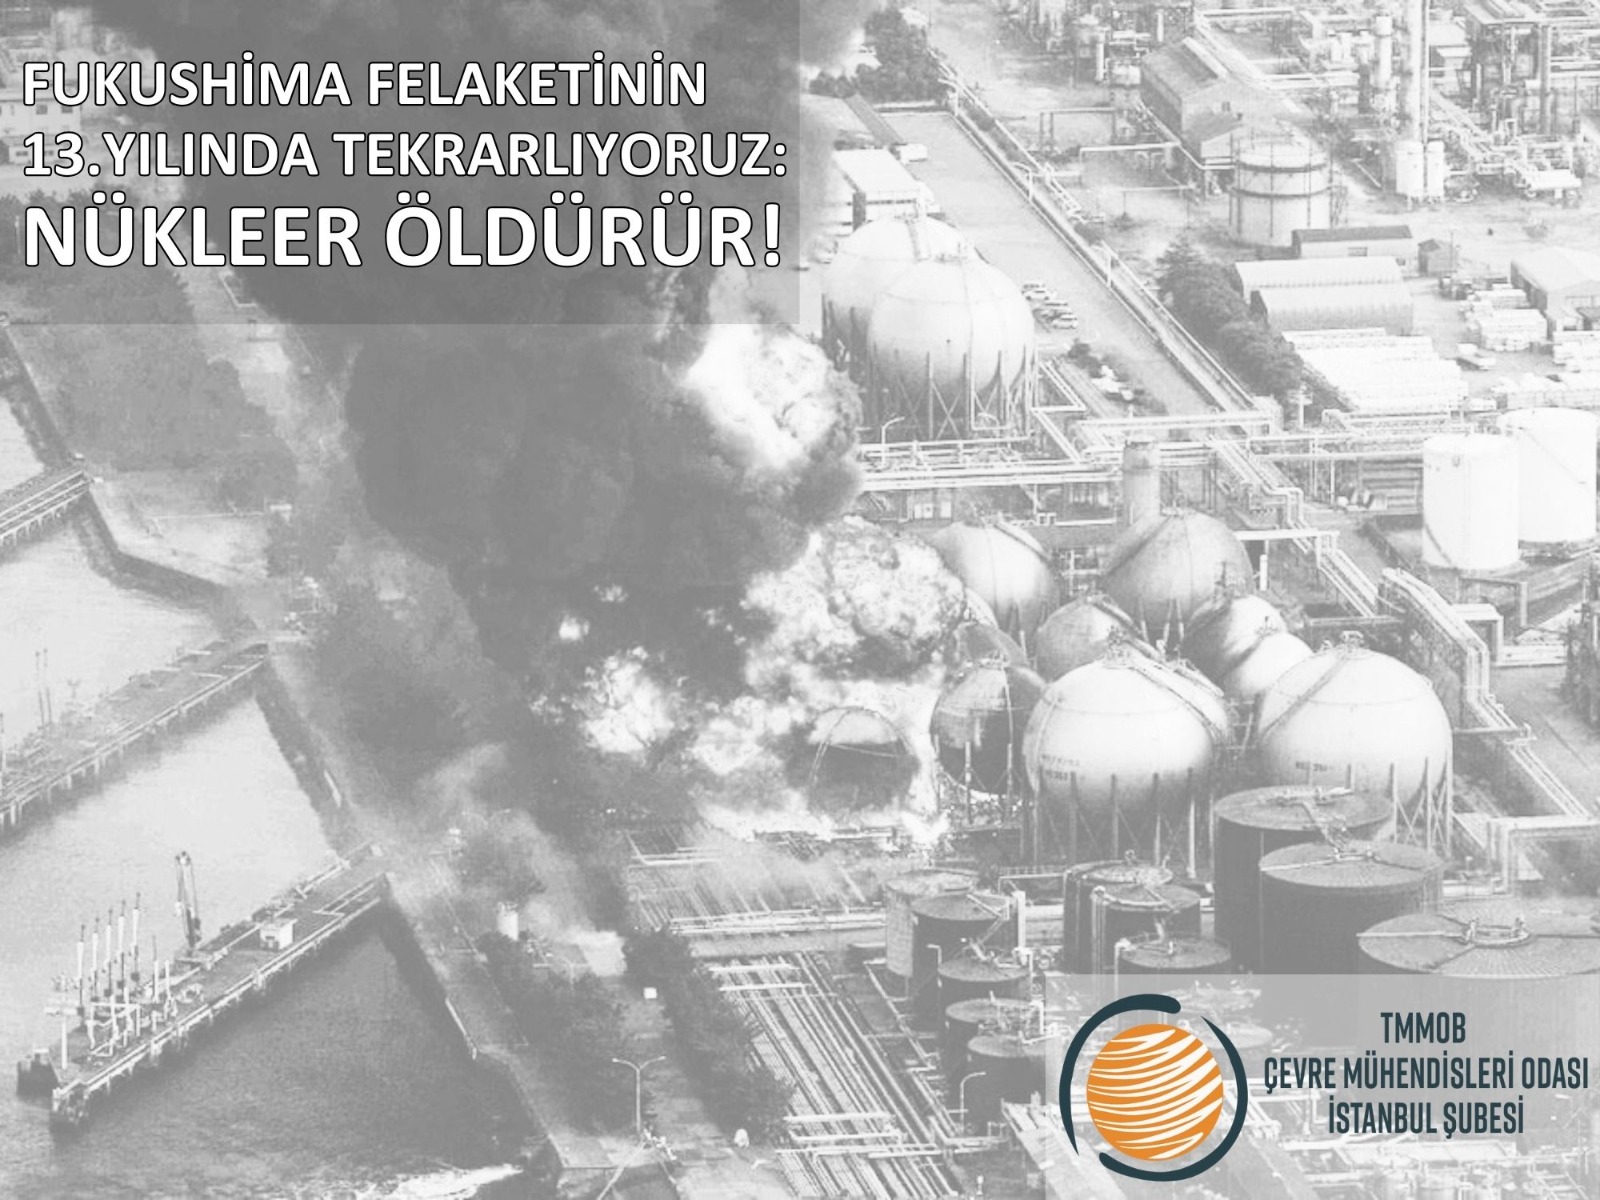 Fukushima Felaketinin 13. Yılında Tekrarlıyoruz: Nükleer Öldürür!